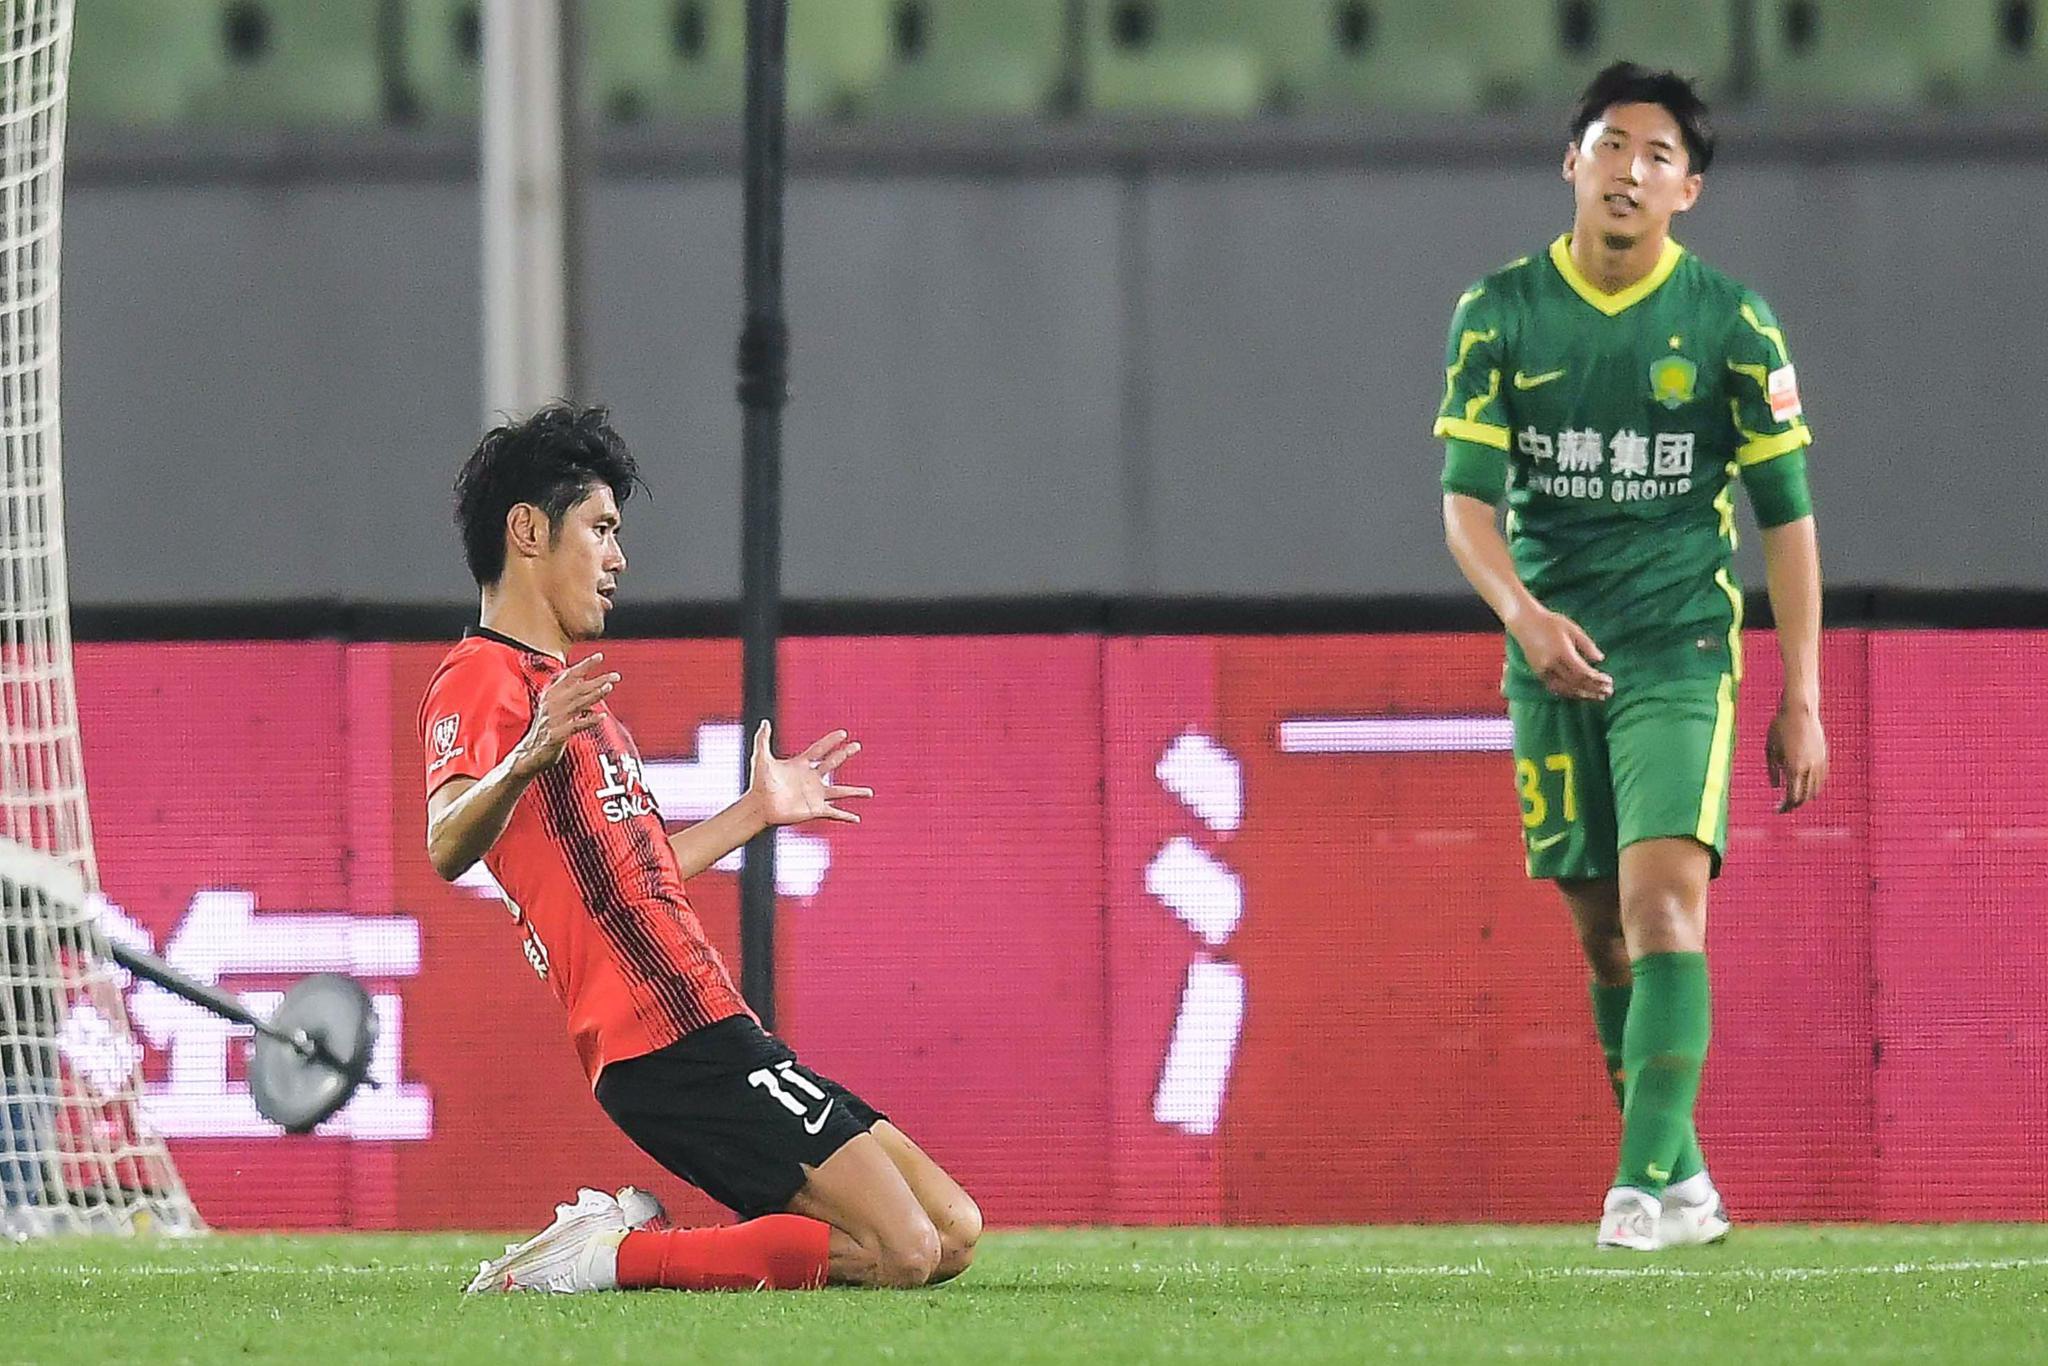 吕文君连续两场比赛头球进球。